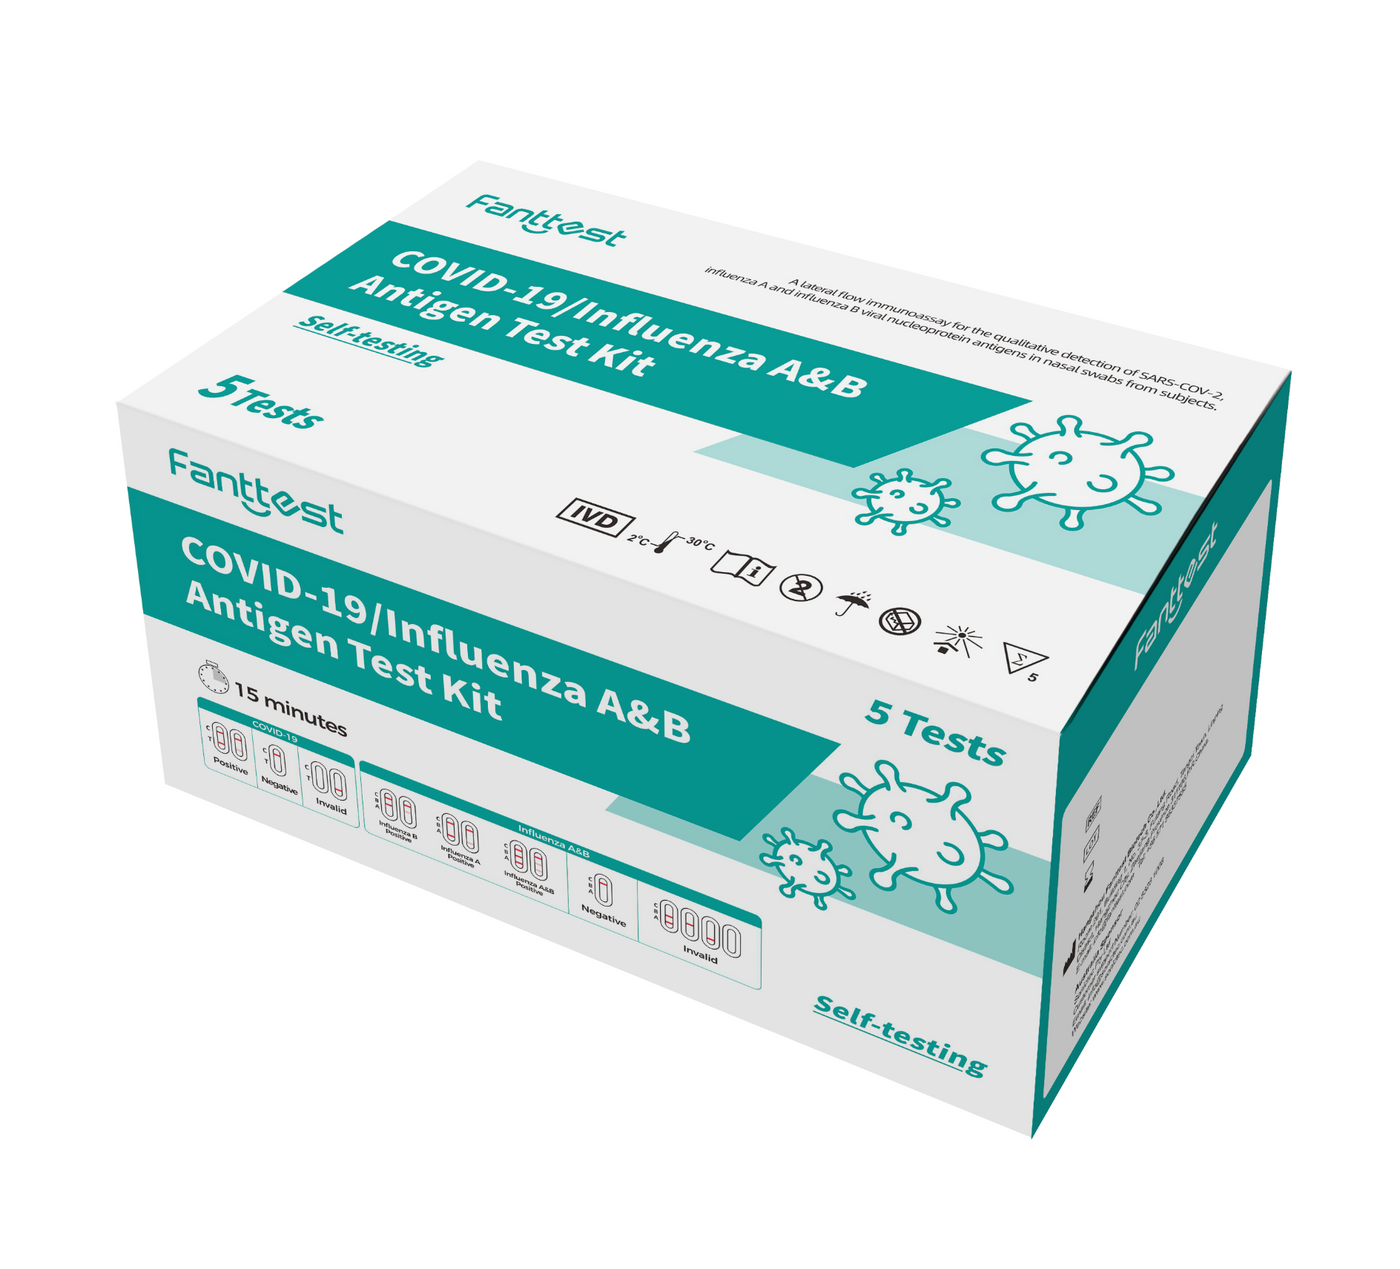 Fanttest 3 In 1 Test Kit , Covid + Influenza A&B Antigen Self Test Kit